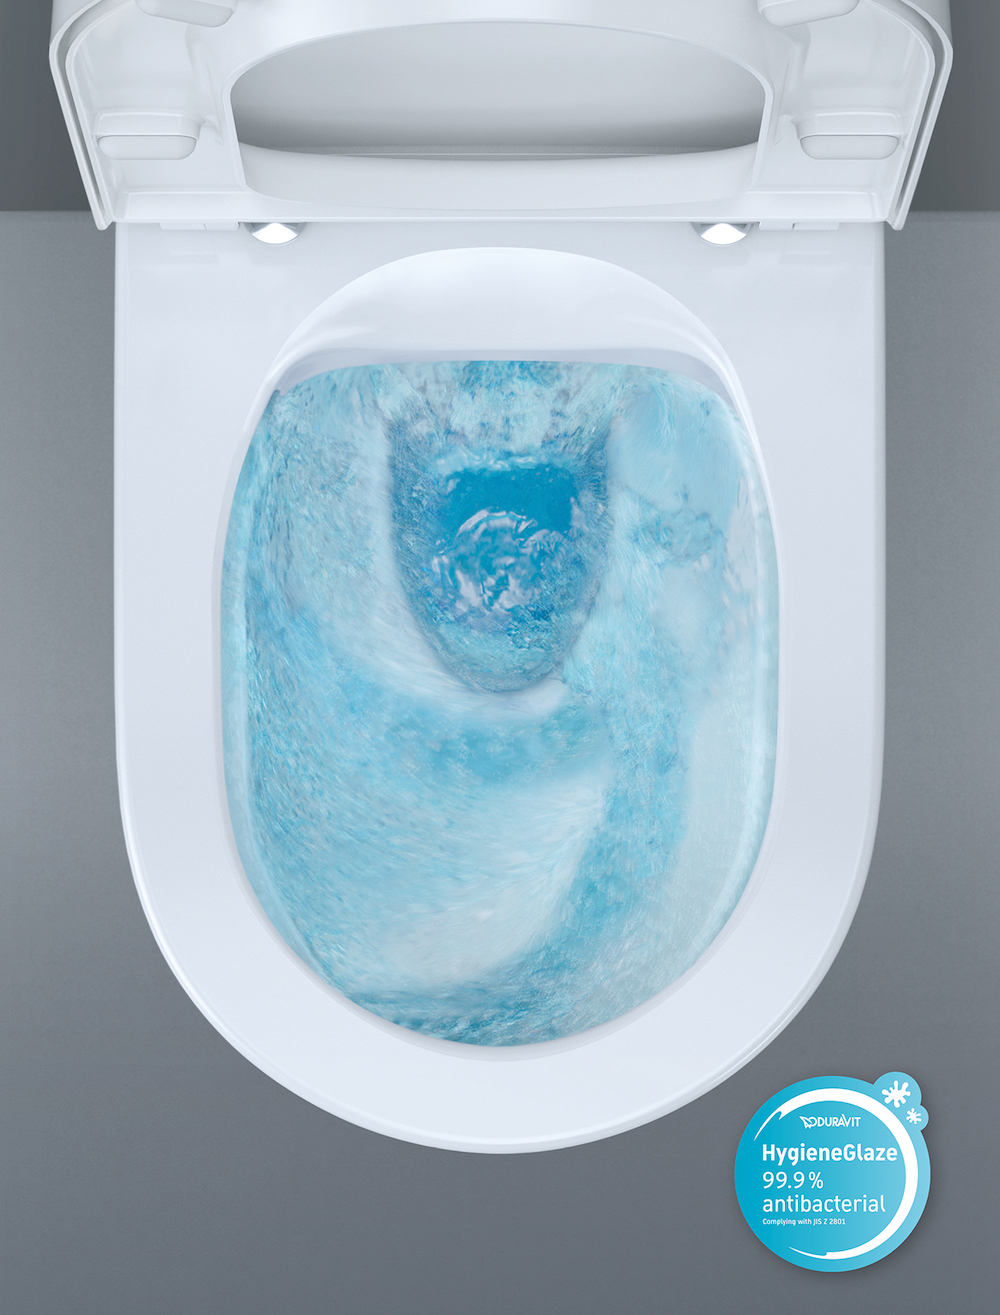 Toilet voor absolute hygiene met Hygieneflush van Duravit #duravit #toilet #hygiene #hygieneflush